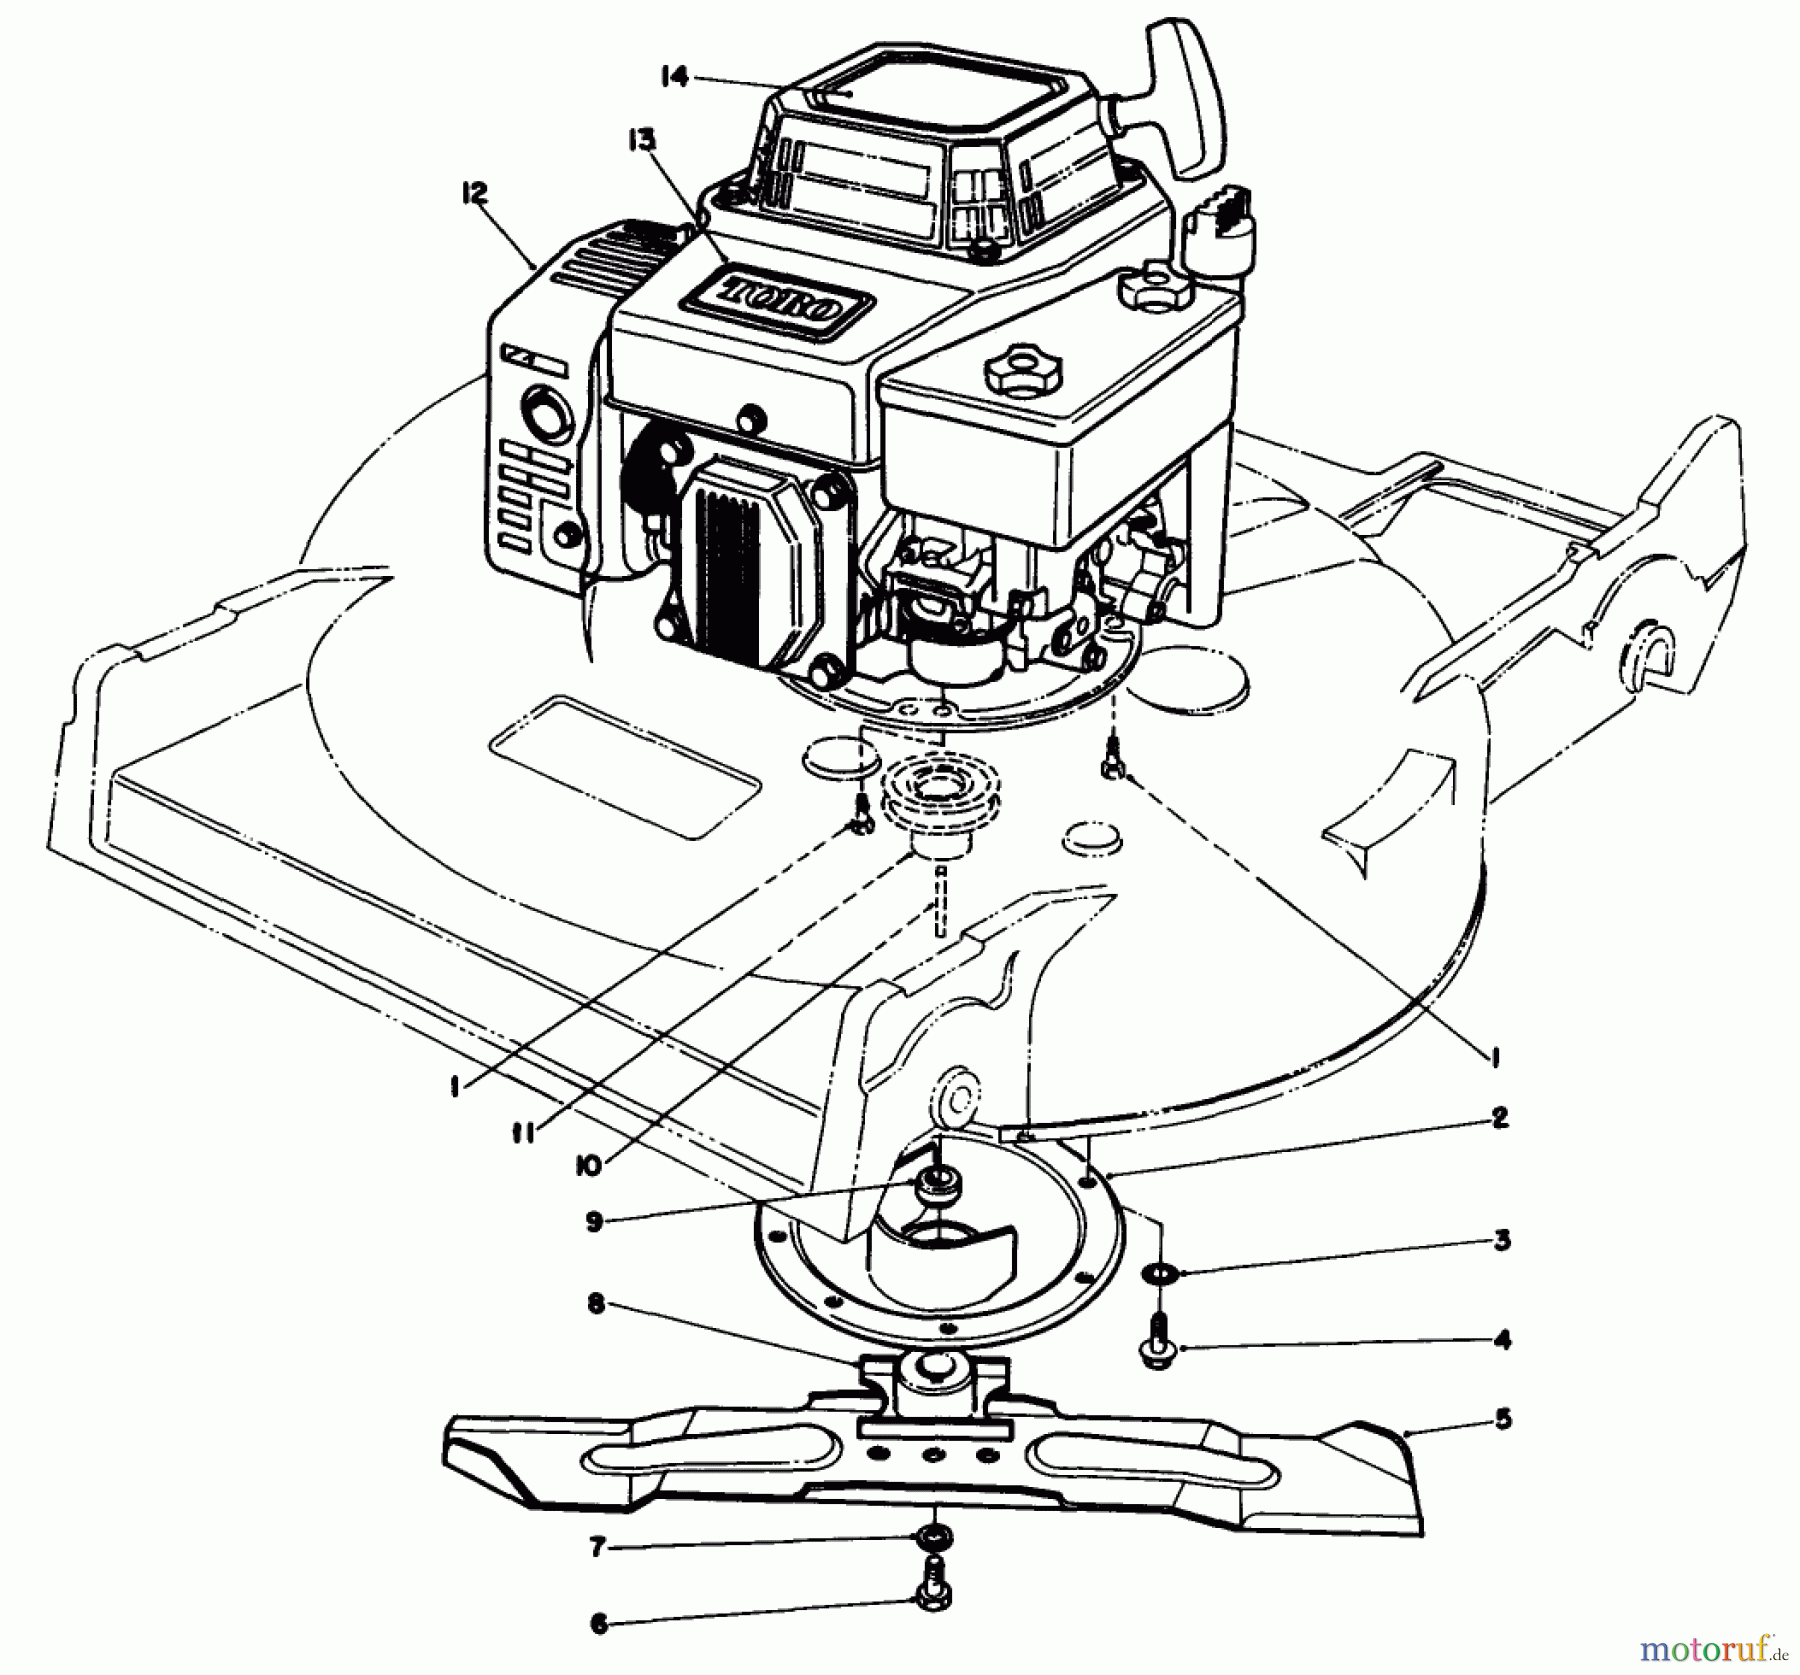  Toro Neu Mowers, Walk-Behind Seite 2 22621 - Toro Lawnmower, 1989 (9000001-9999999) ENGINE ASSEMBLY